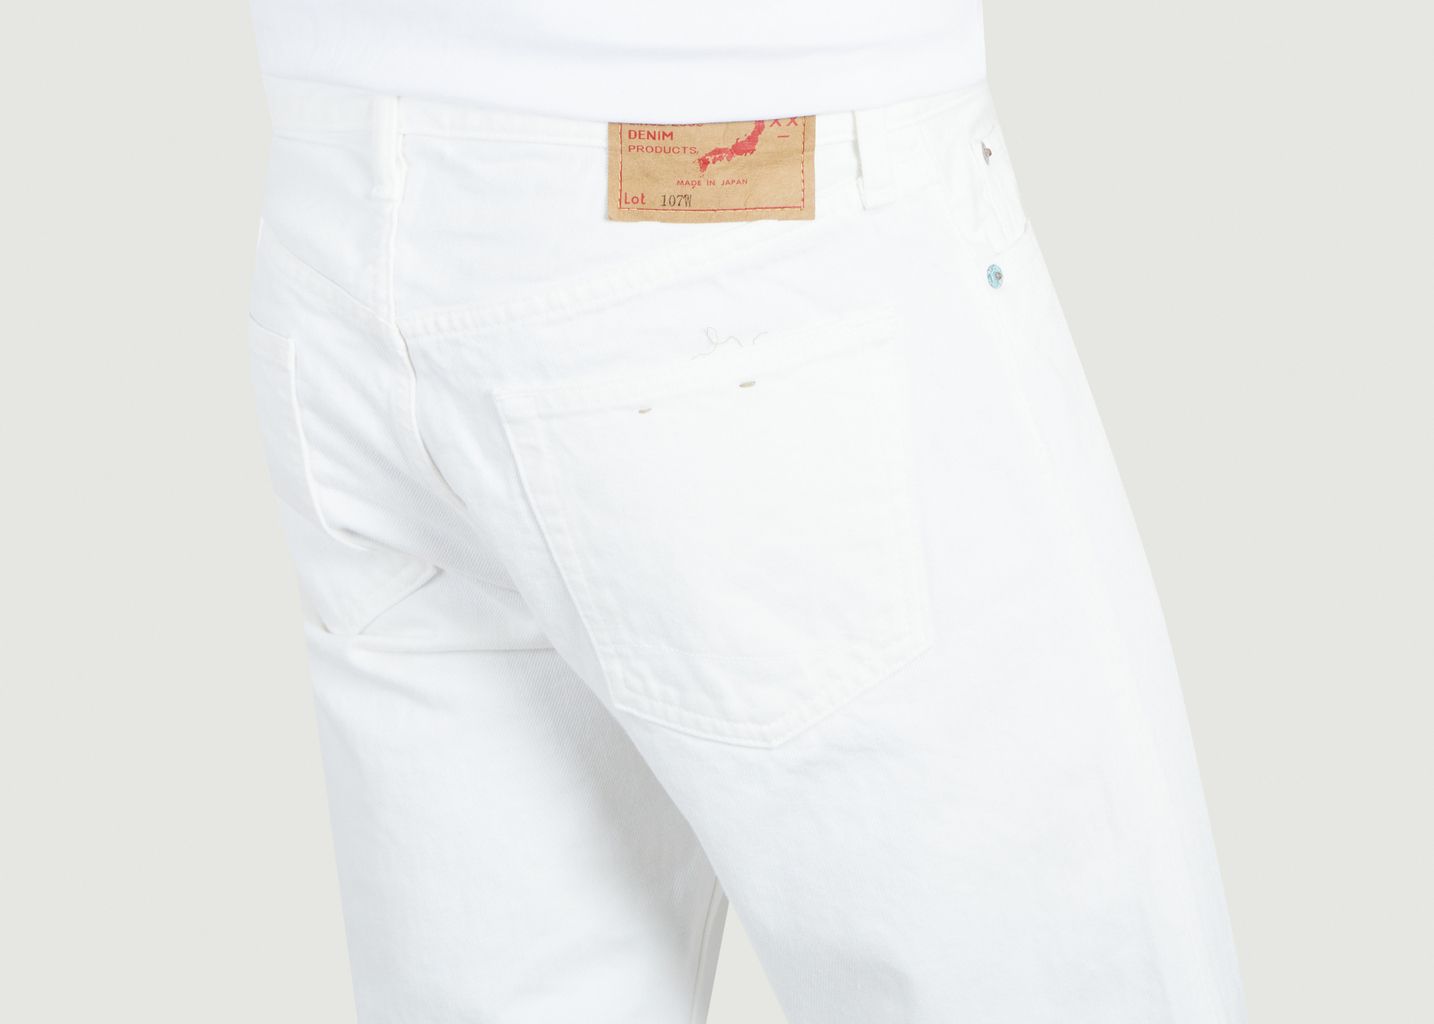 107 Ivy Fit Cotton Jeans - orSlow